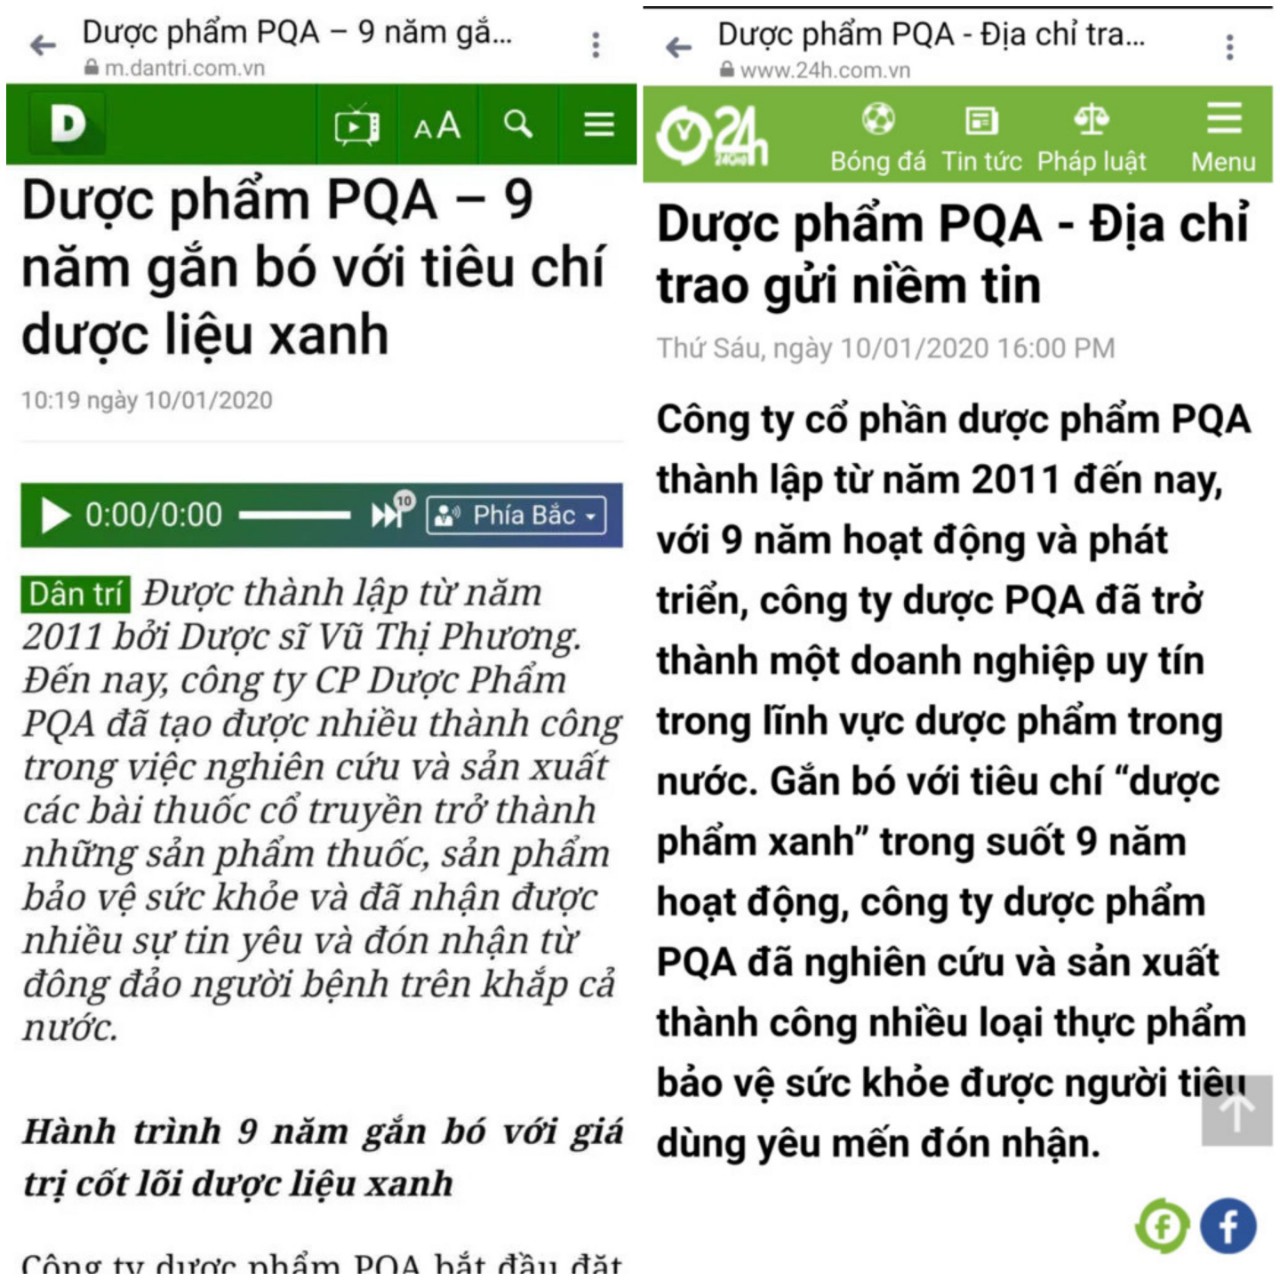 Báo chí viết về dược phẩm PQA